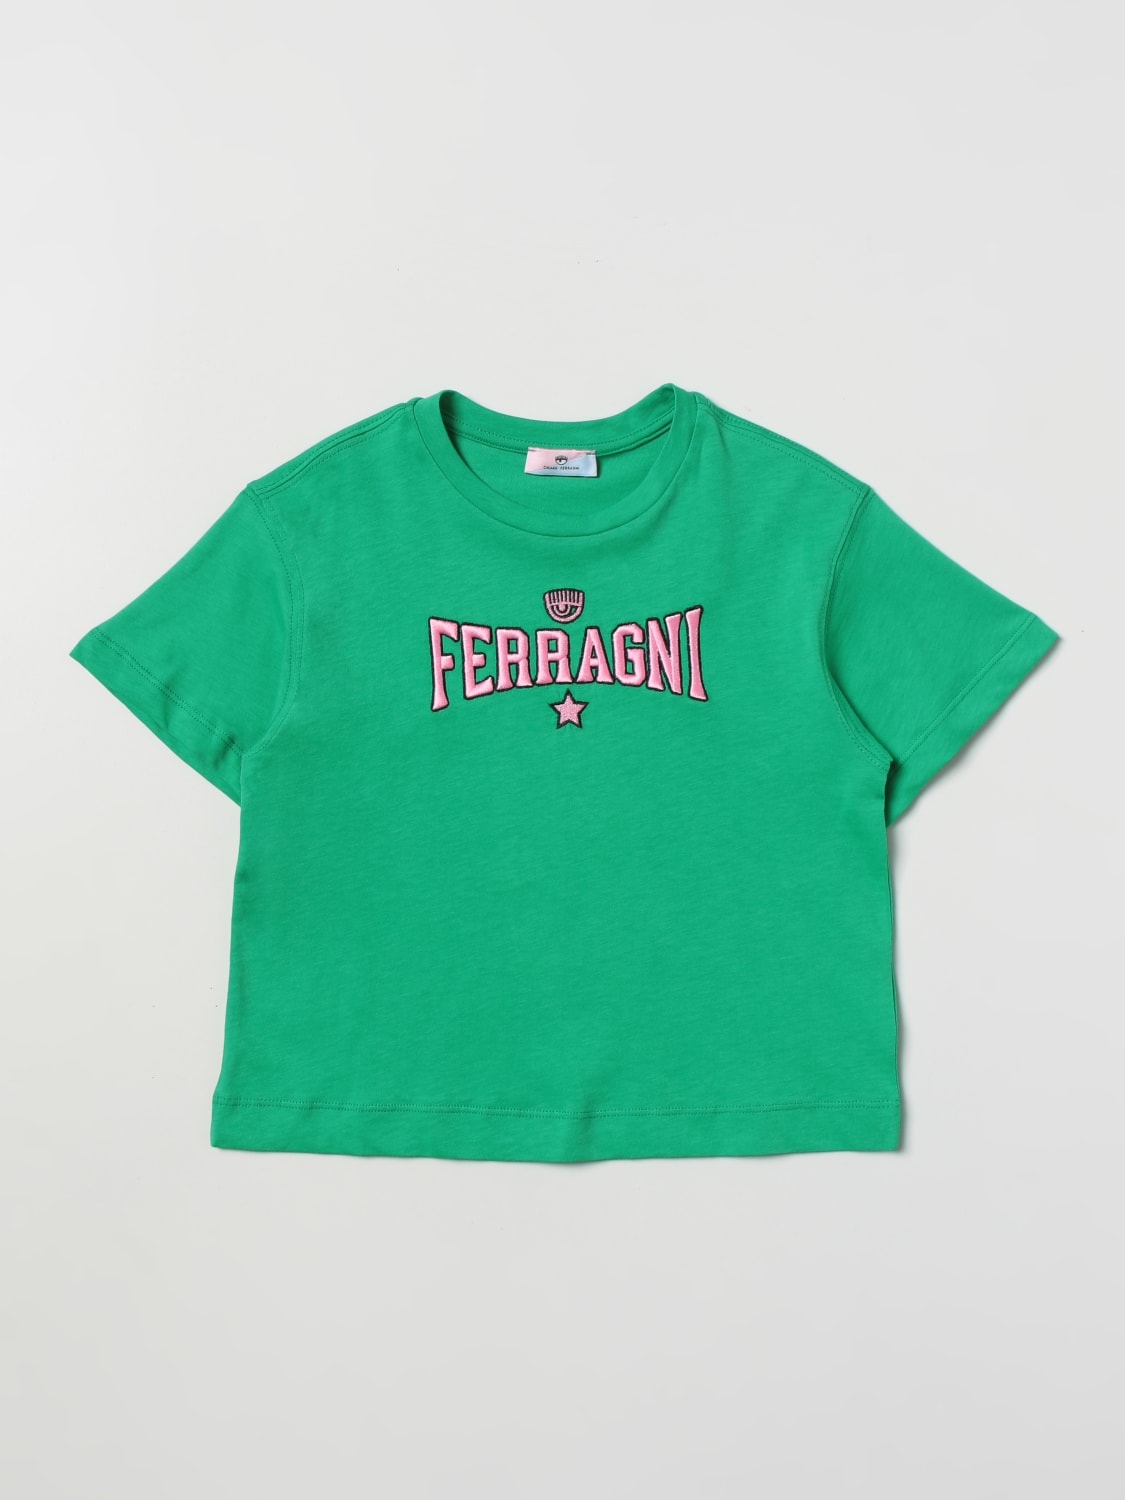 Tシャツ Chiara Ferragni: Tシャツ Chiara Ferragni 女の子 グリーン 2